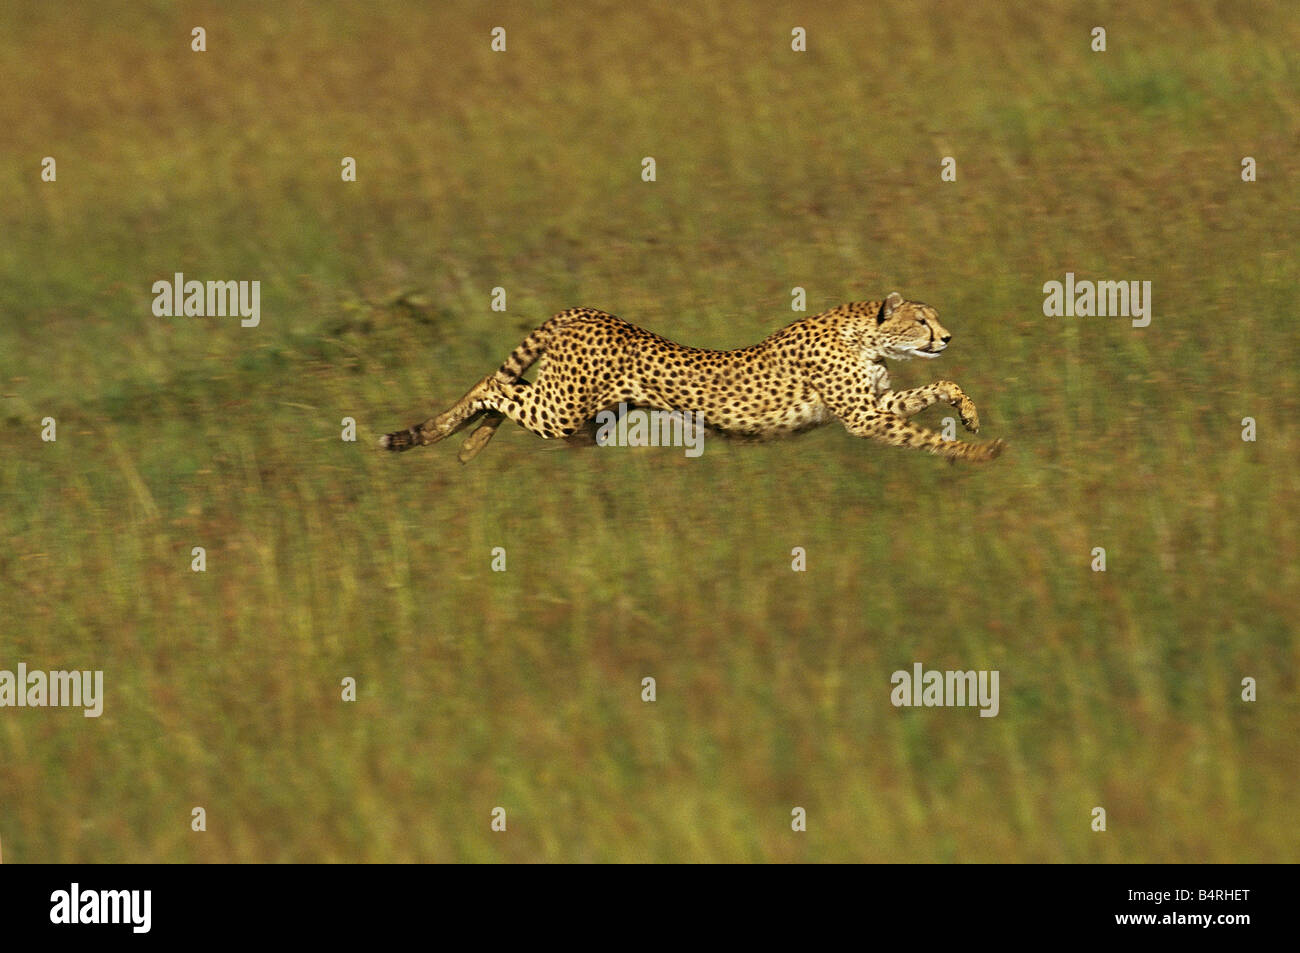 Cheetah at Full Speed Stock Photo